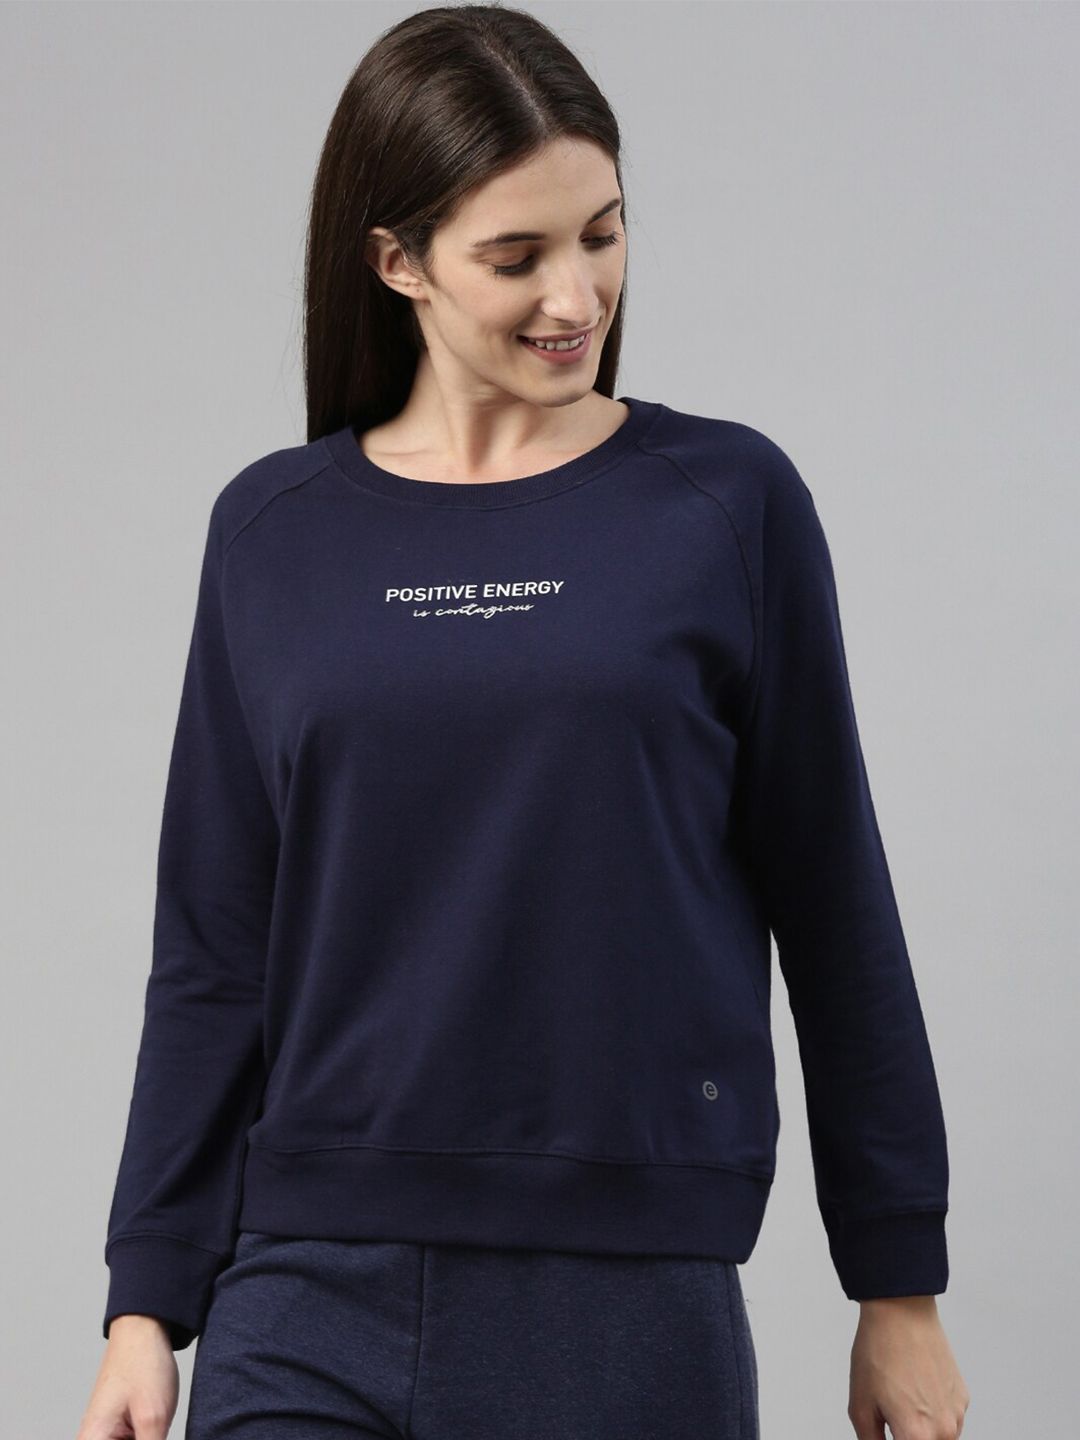 Enamor Women Navy Blue Printed Sweatshirt Price in India